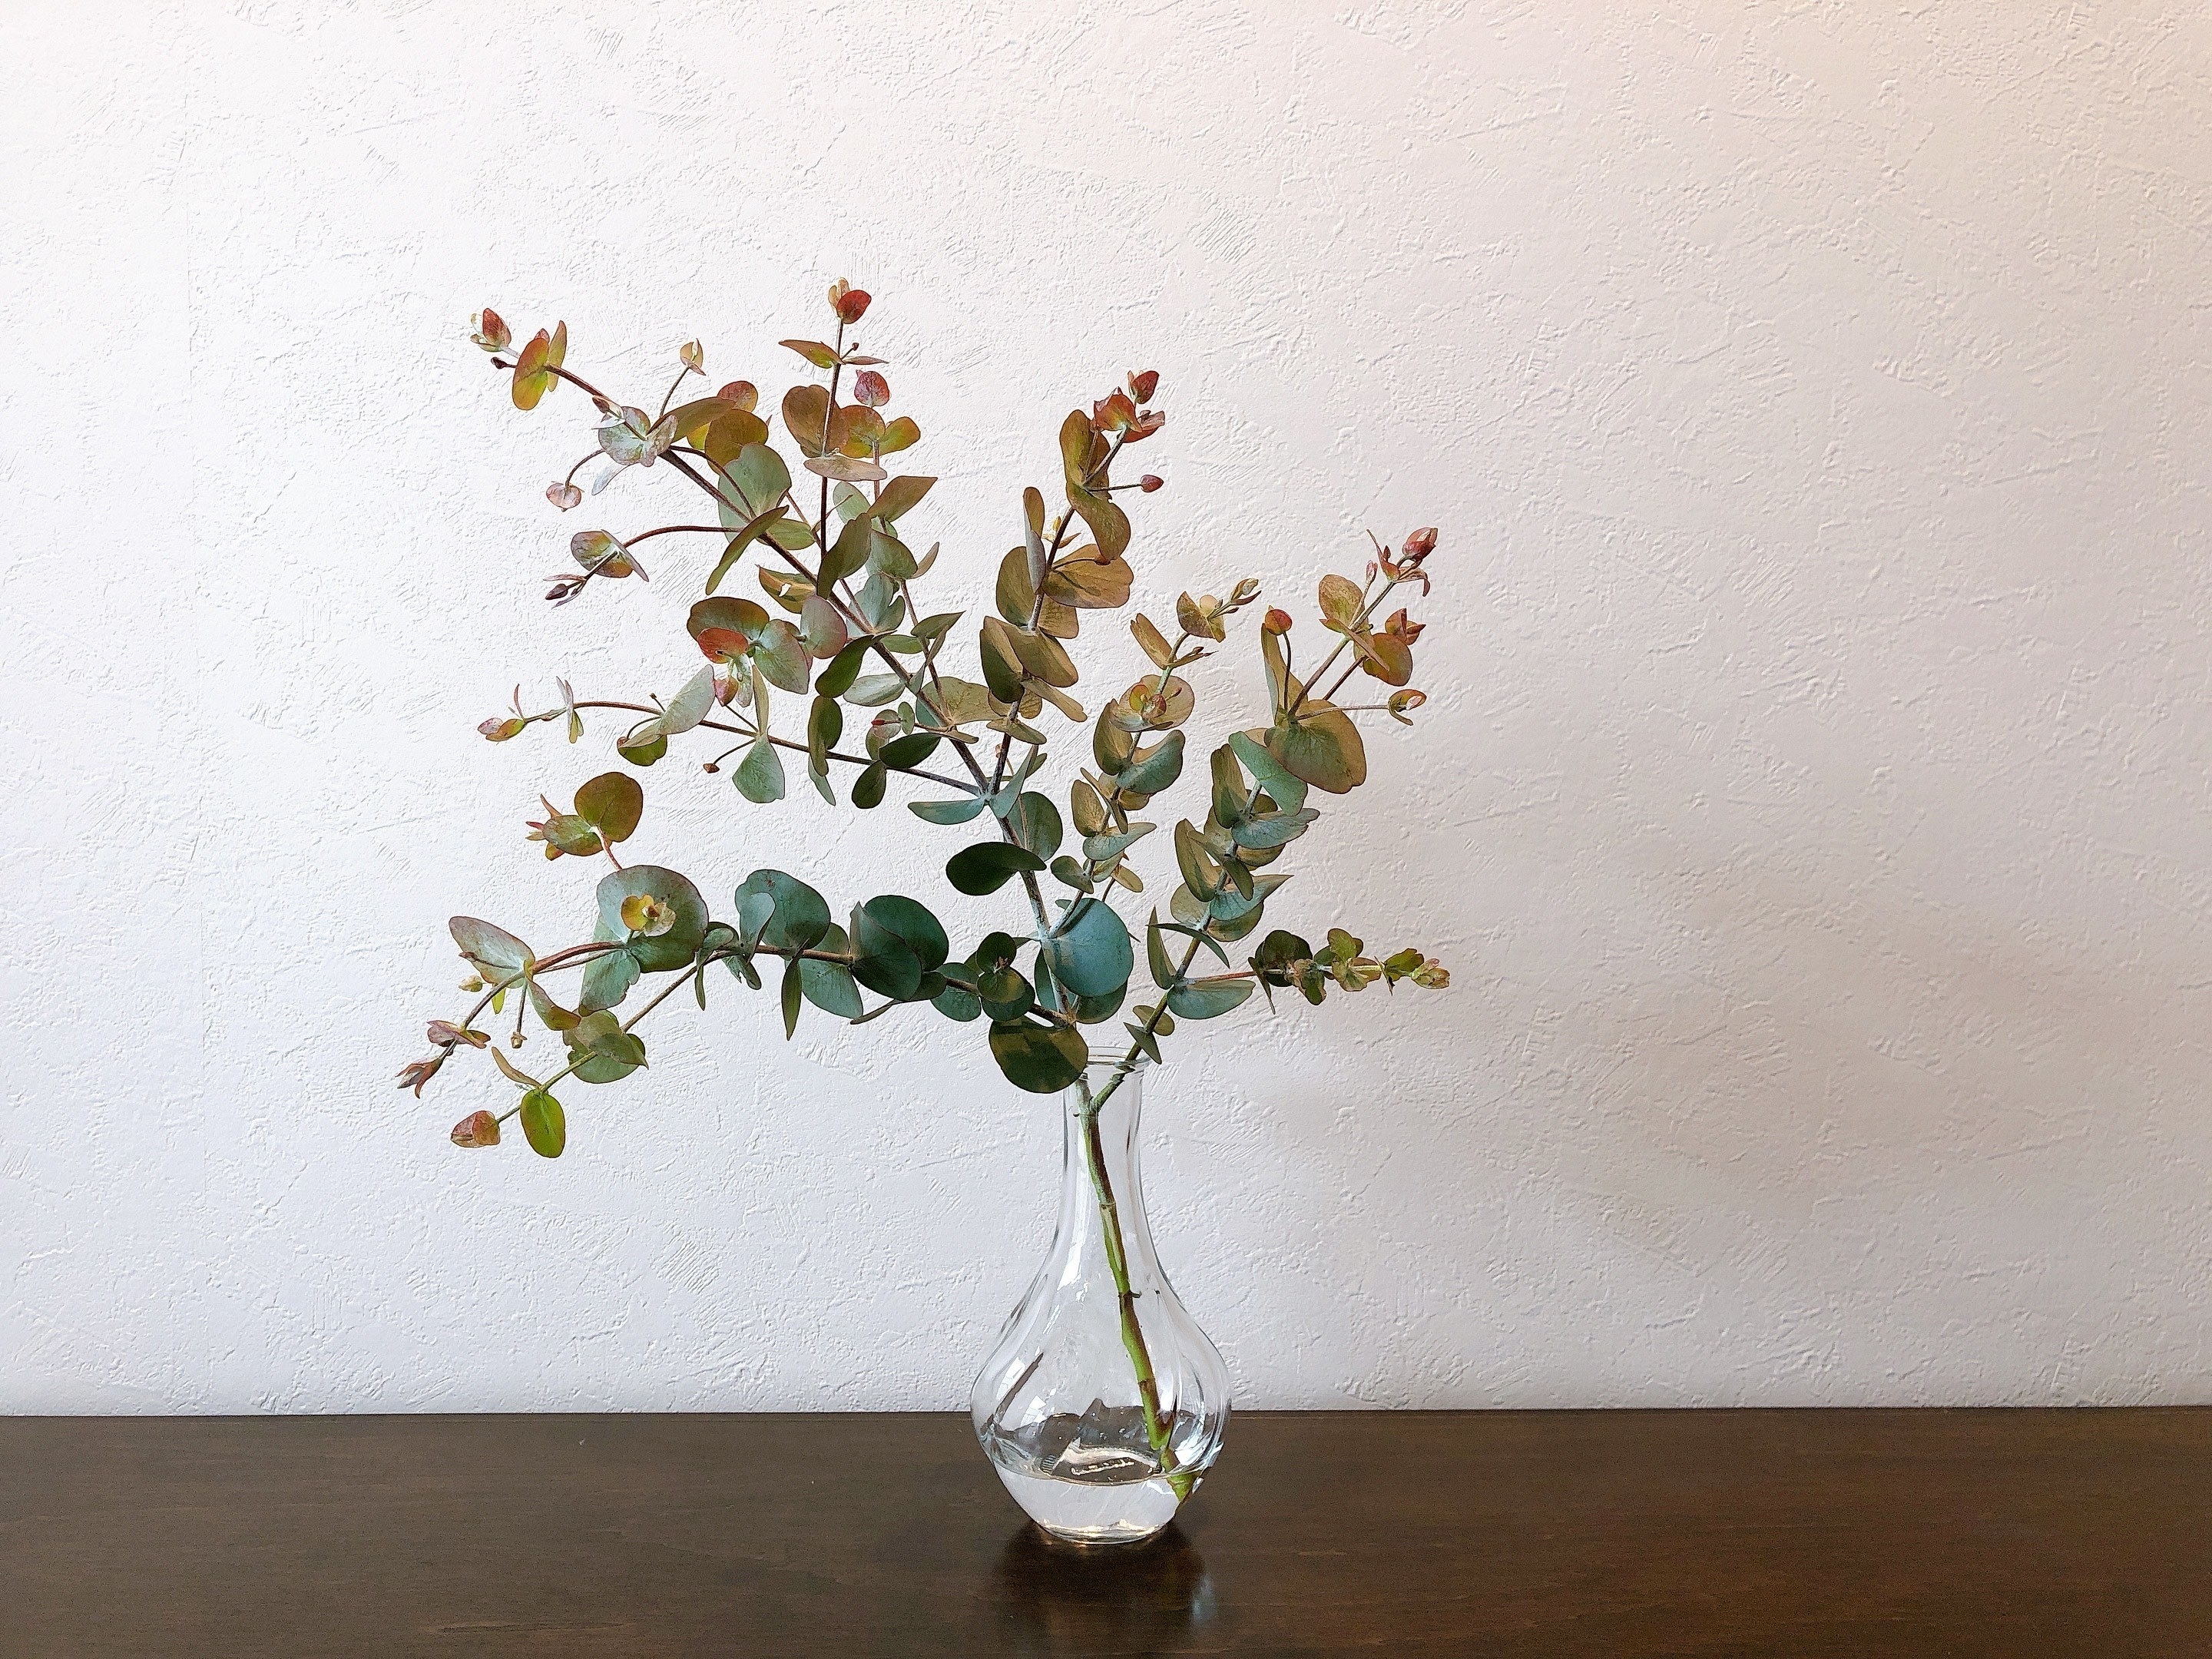 IKEA（イケア）のオススメの花瓶「VILJESTARK ヴィリエスタルク 花瓶,クリアガラス,17cm」